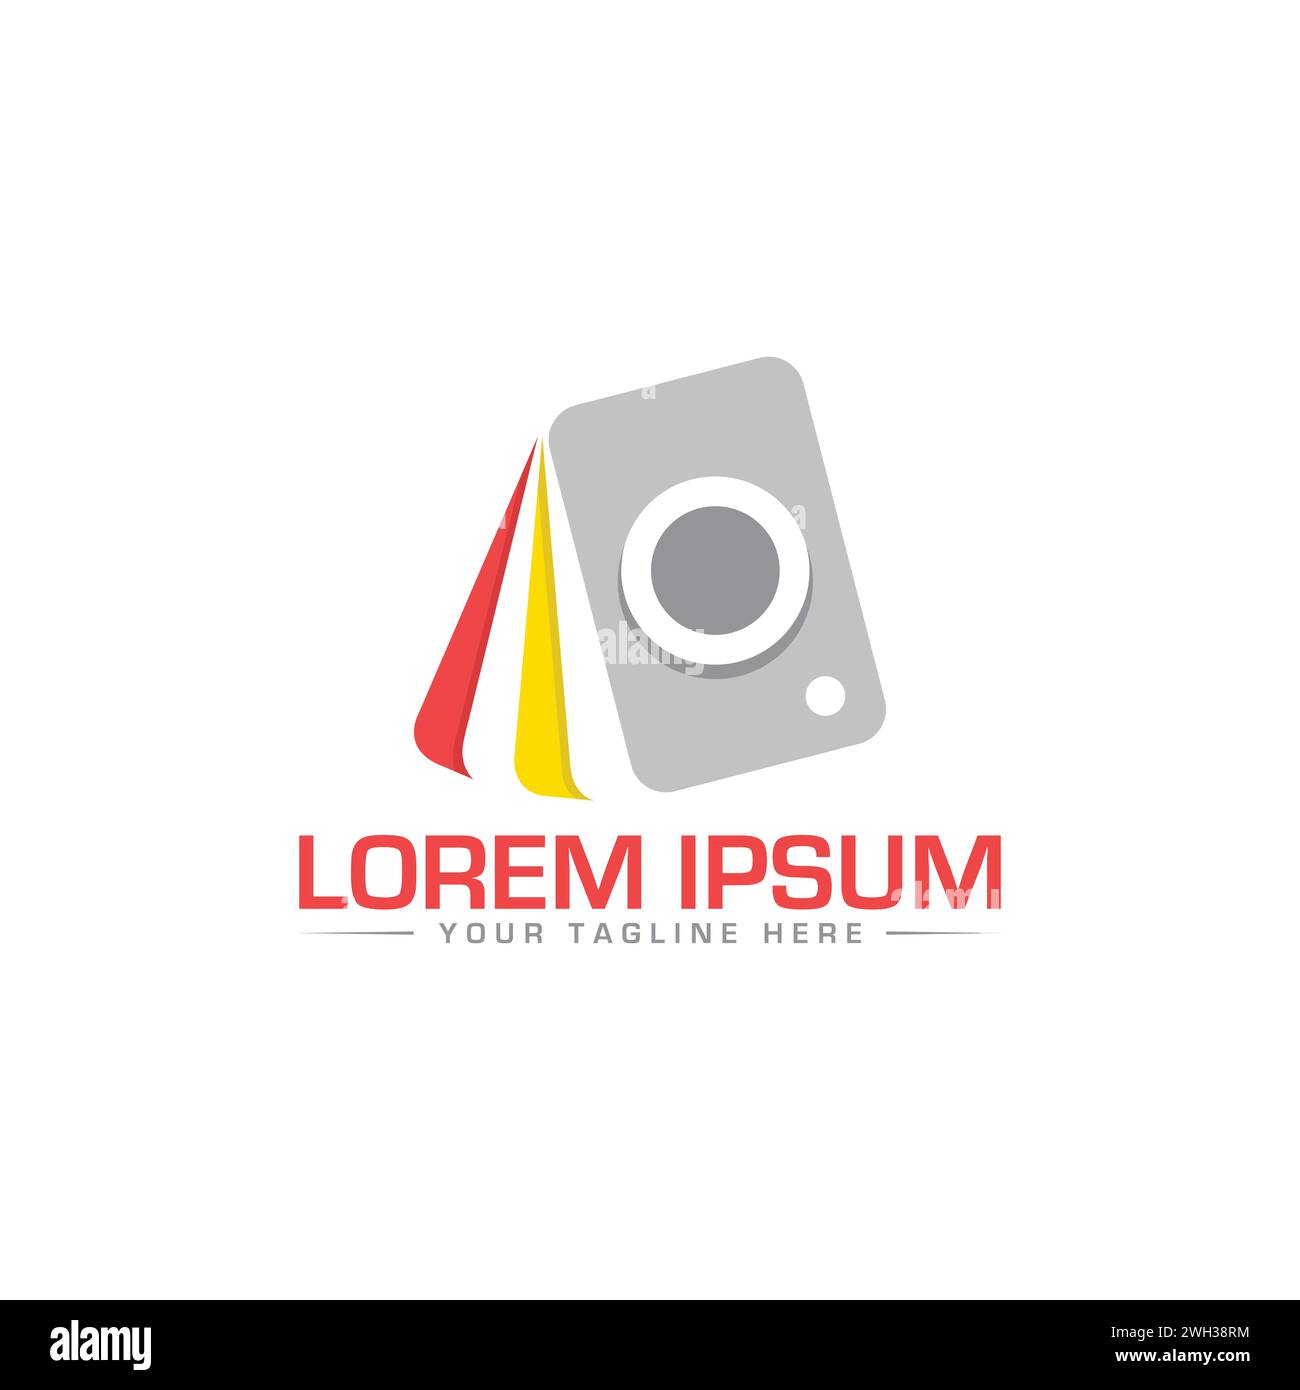 Design del logo della fotocamera. Design esclusivo e moderno del logo della fotocamera. Illustrazione Vettoriale